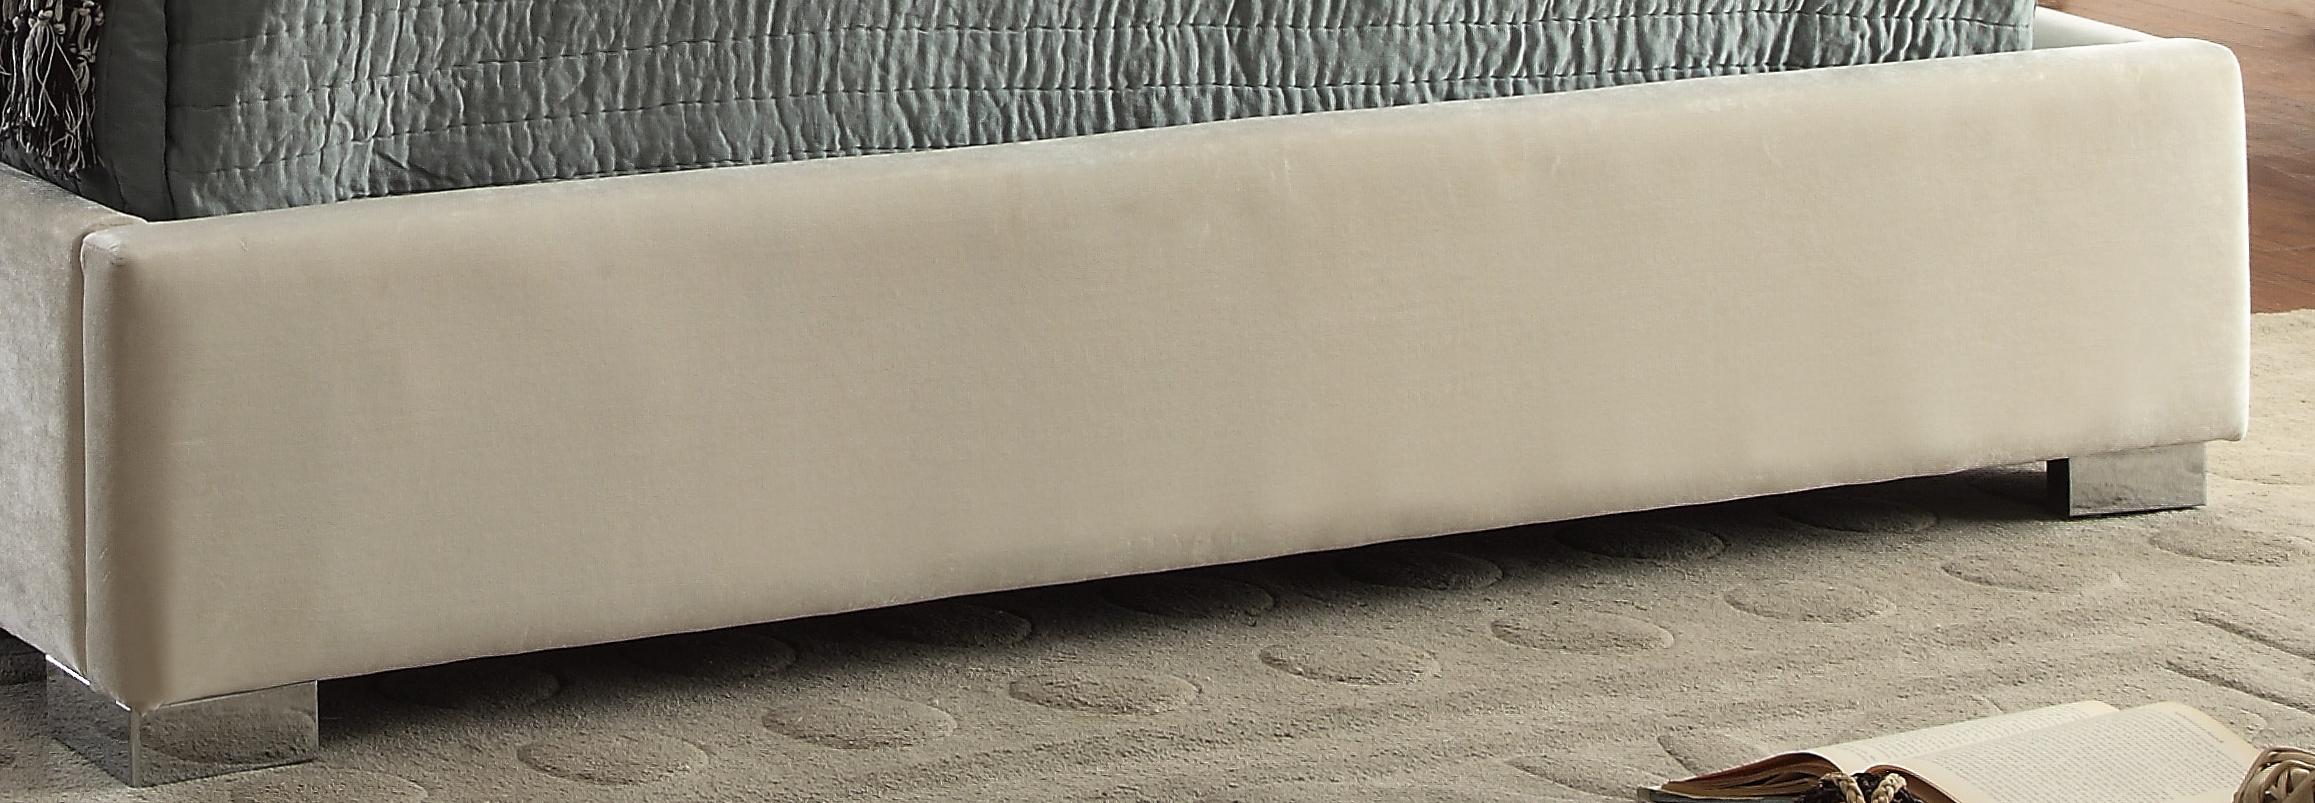 

    
MadisonCream-Q-Bed Meridian Furniture Platform Bed
